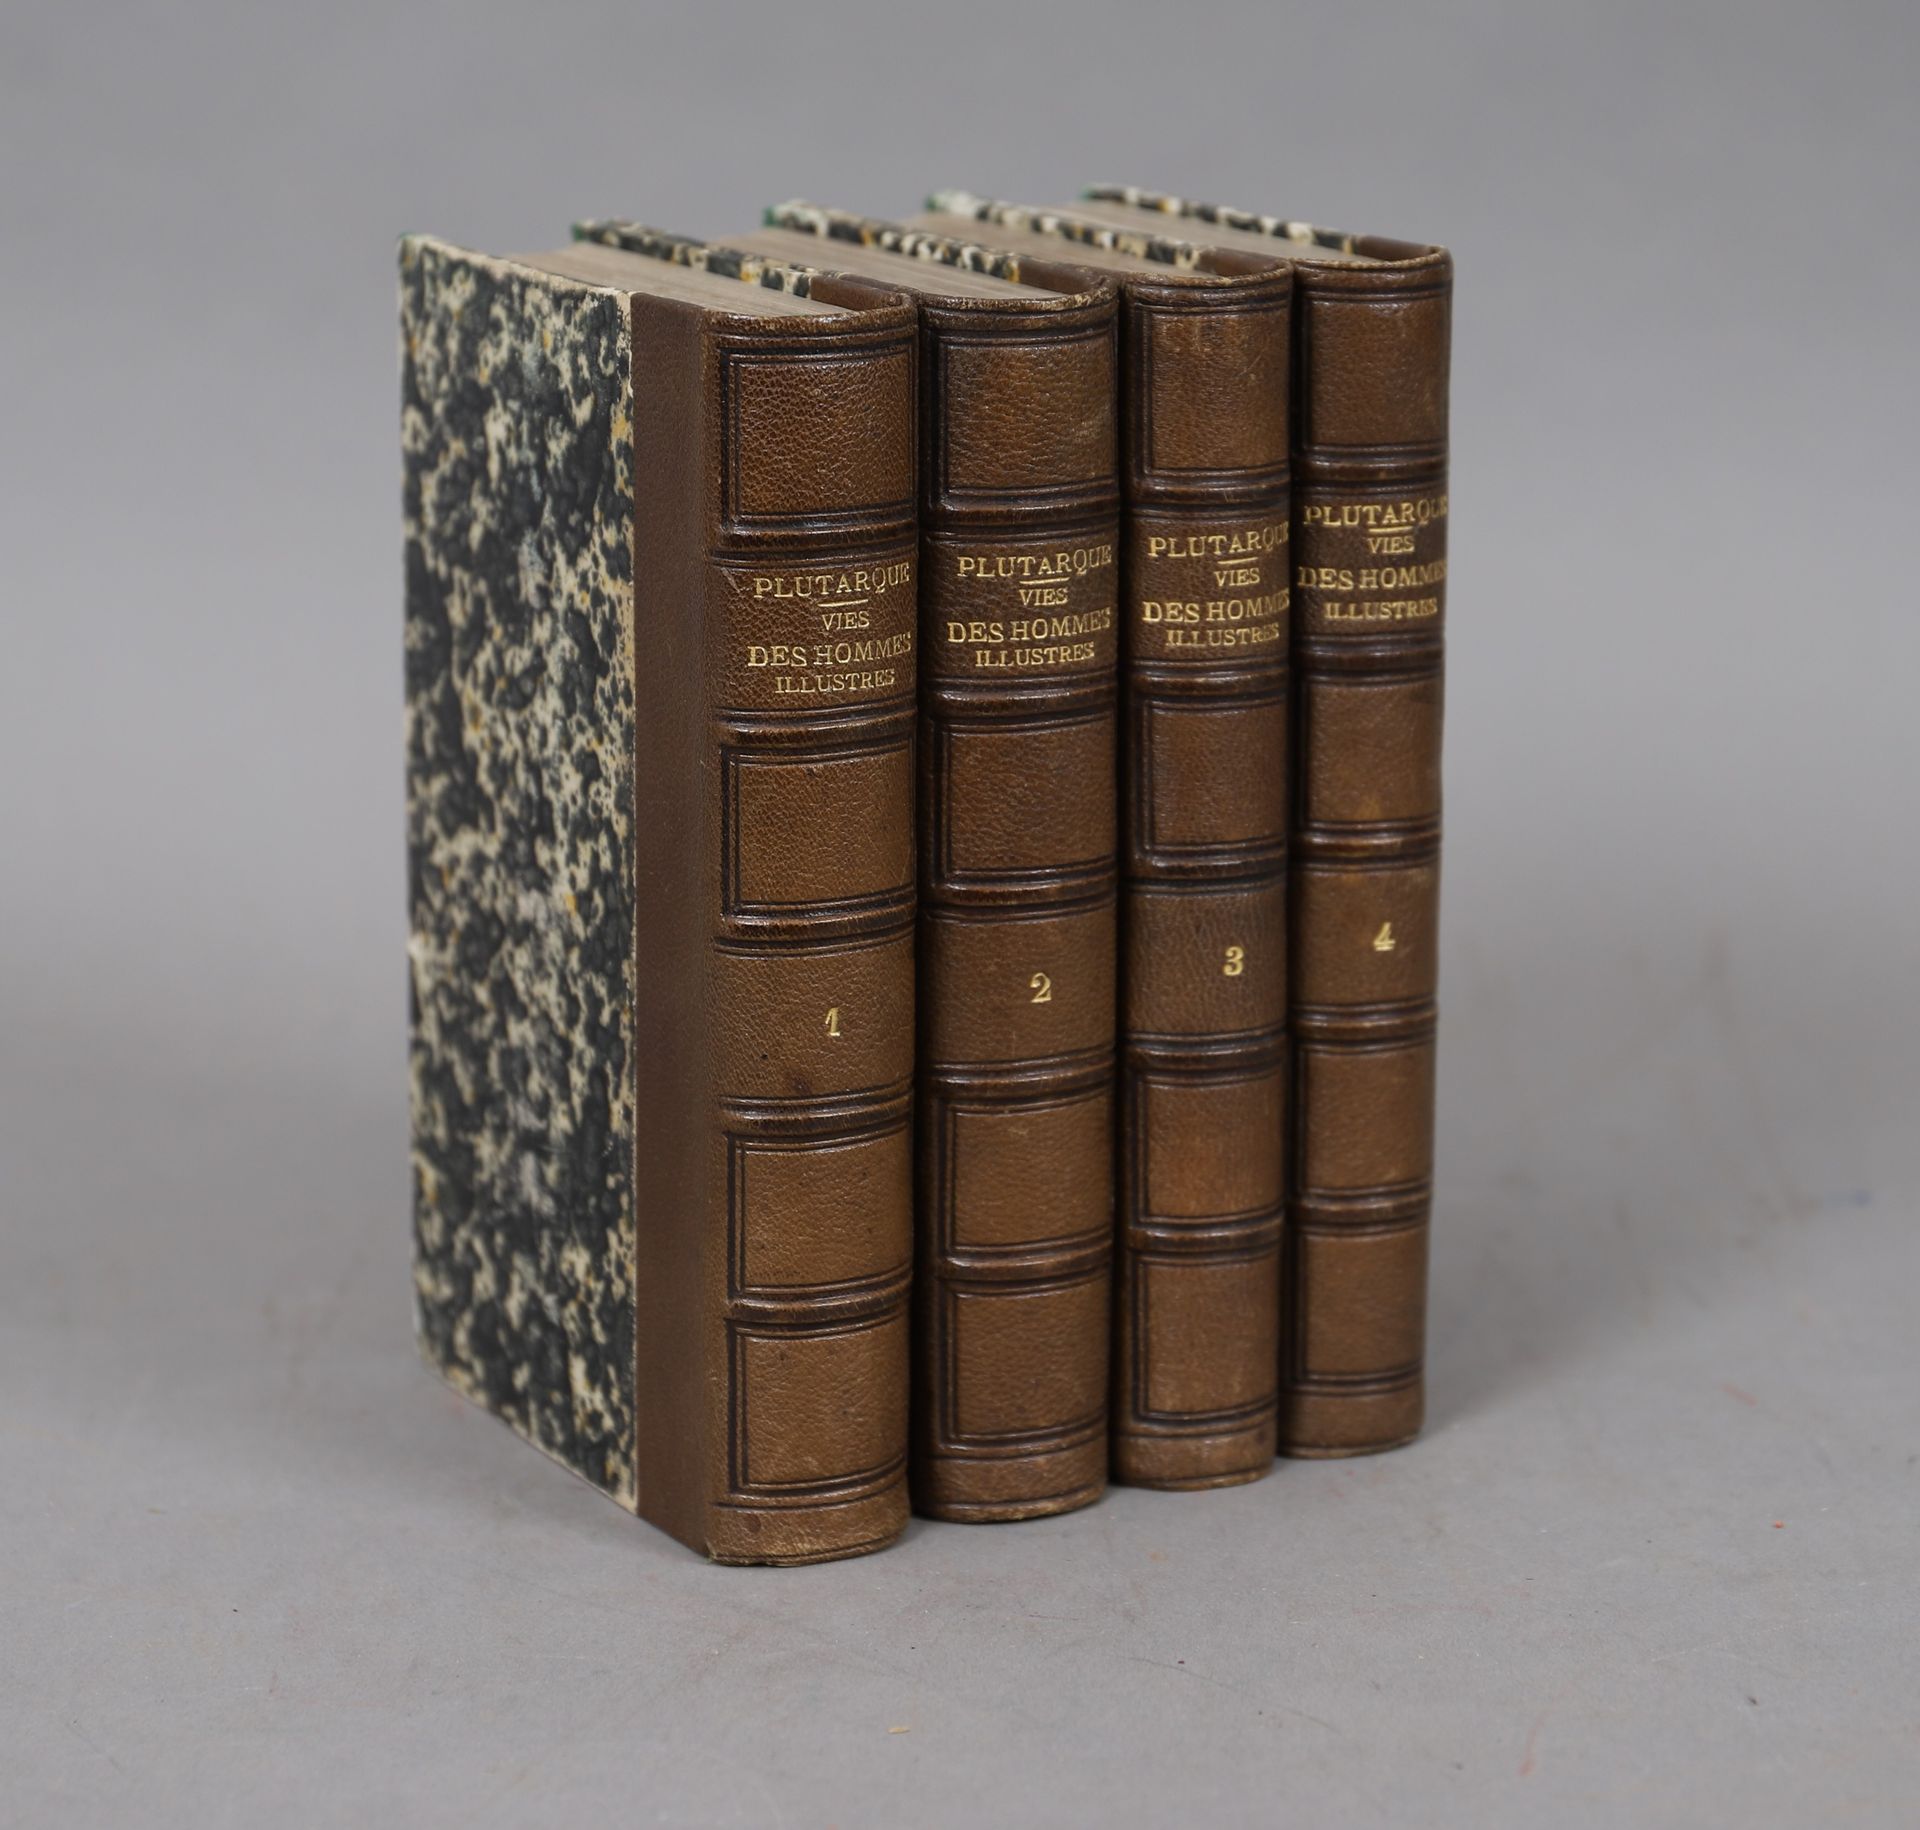 Null 普鲁塔克--有图画的人的生活

4册合订本。

1861